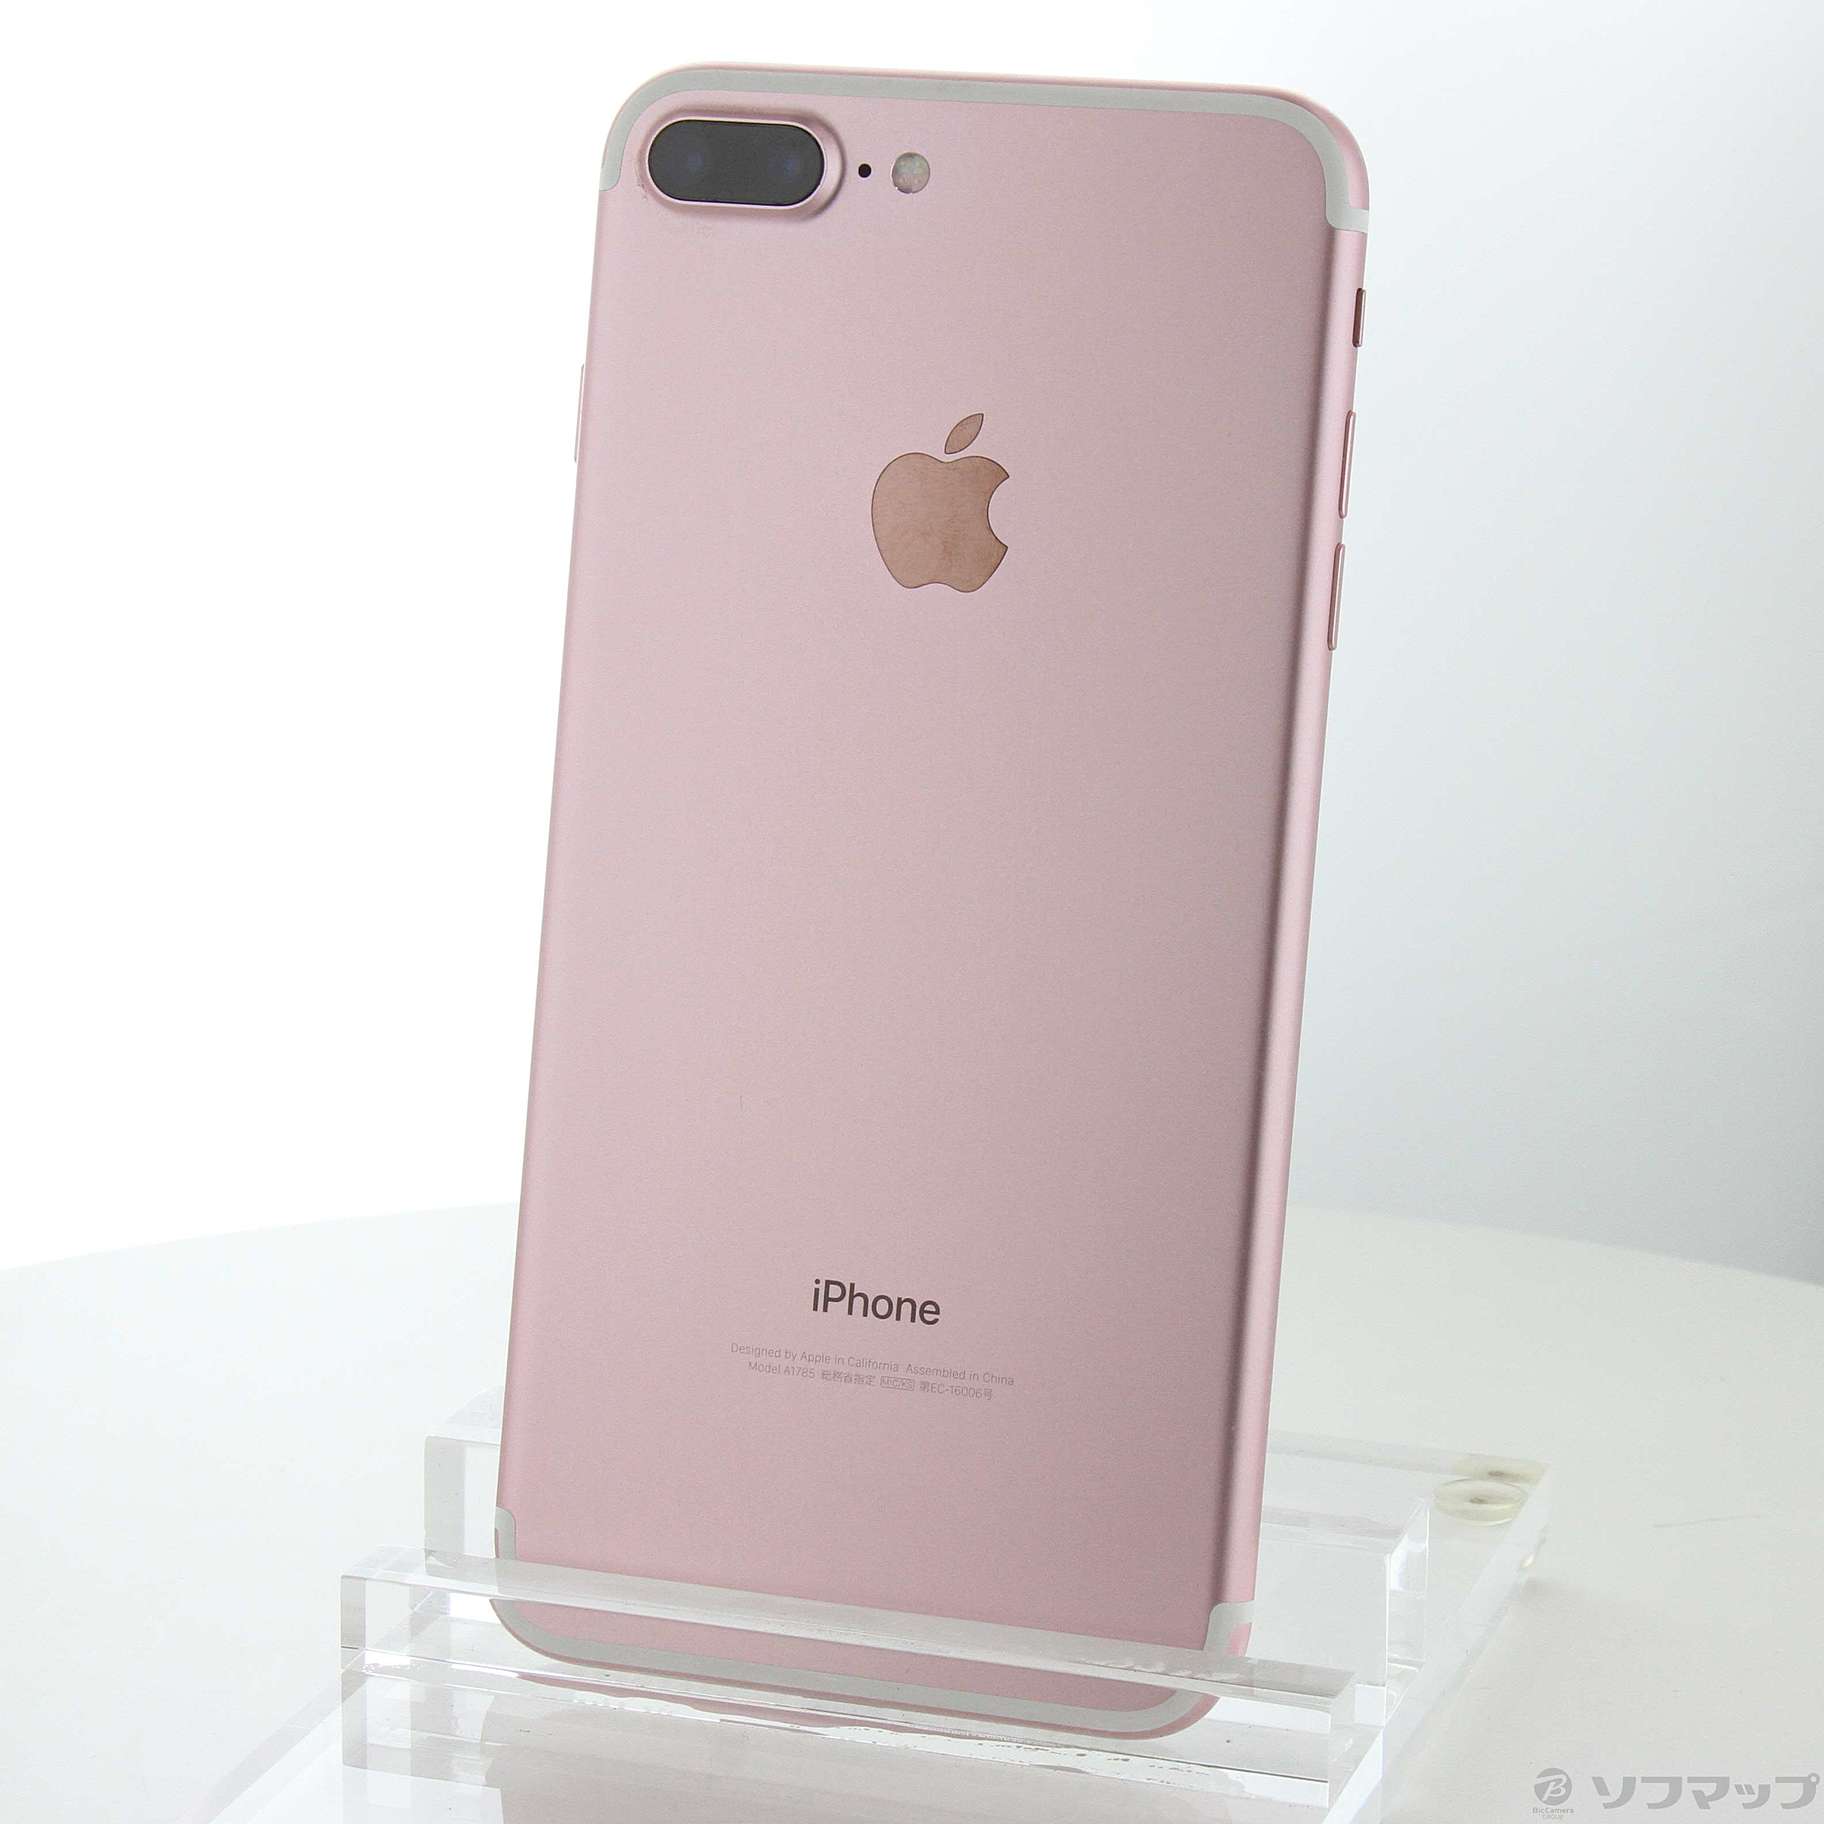 iPhone 7 Plus 128GB SIMフリー Rose gold